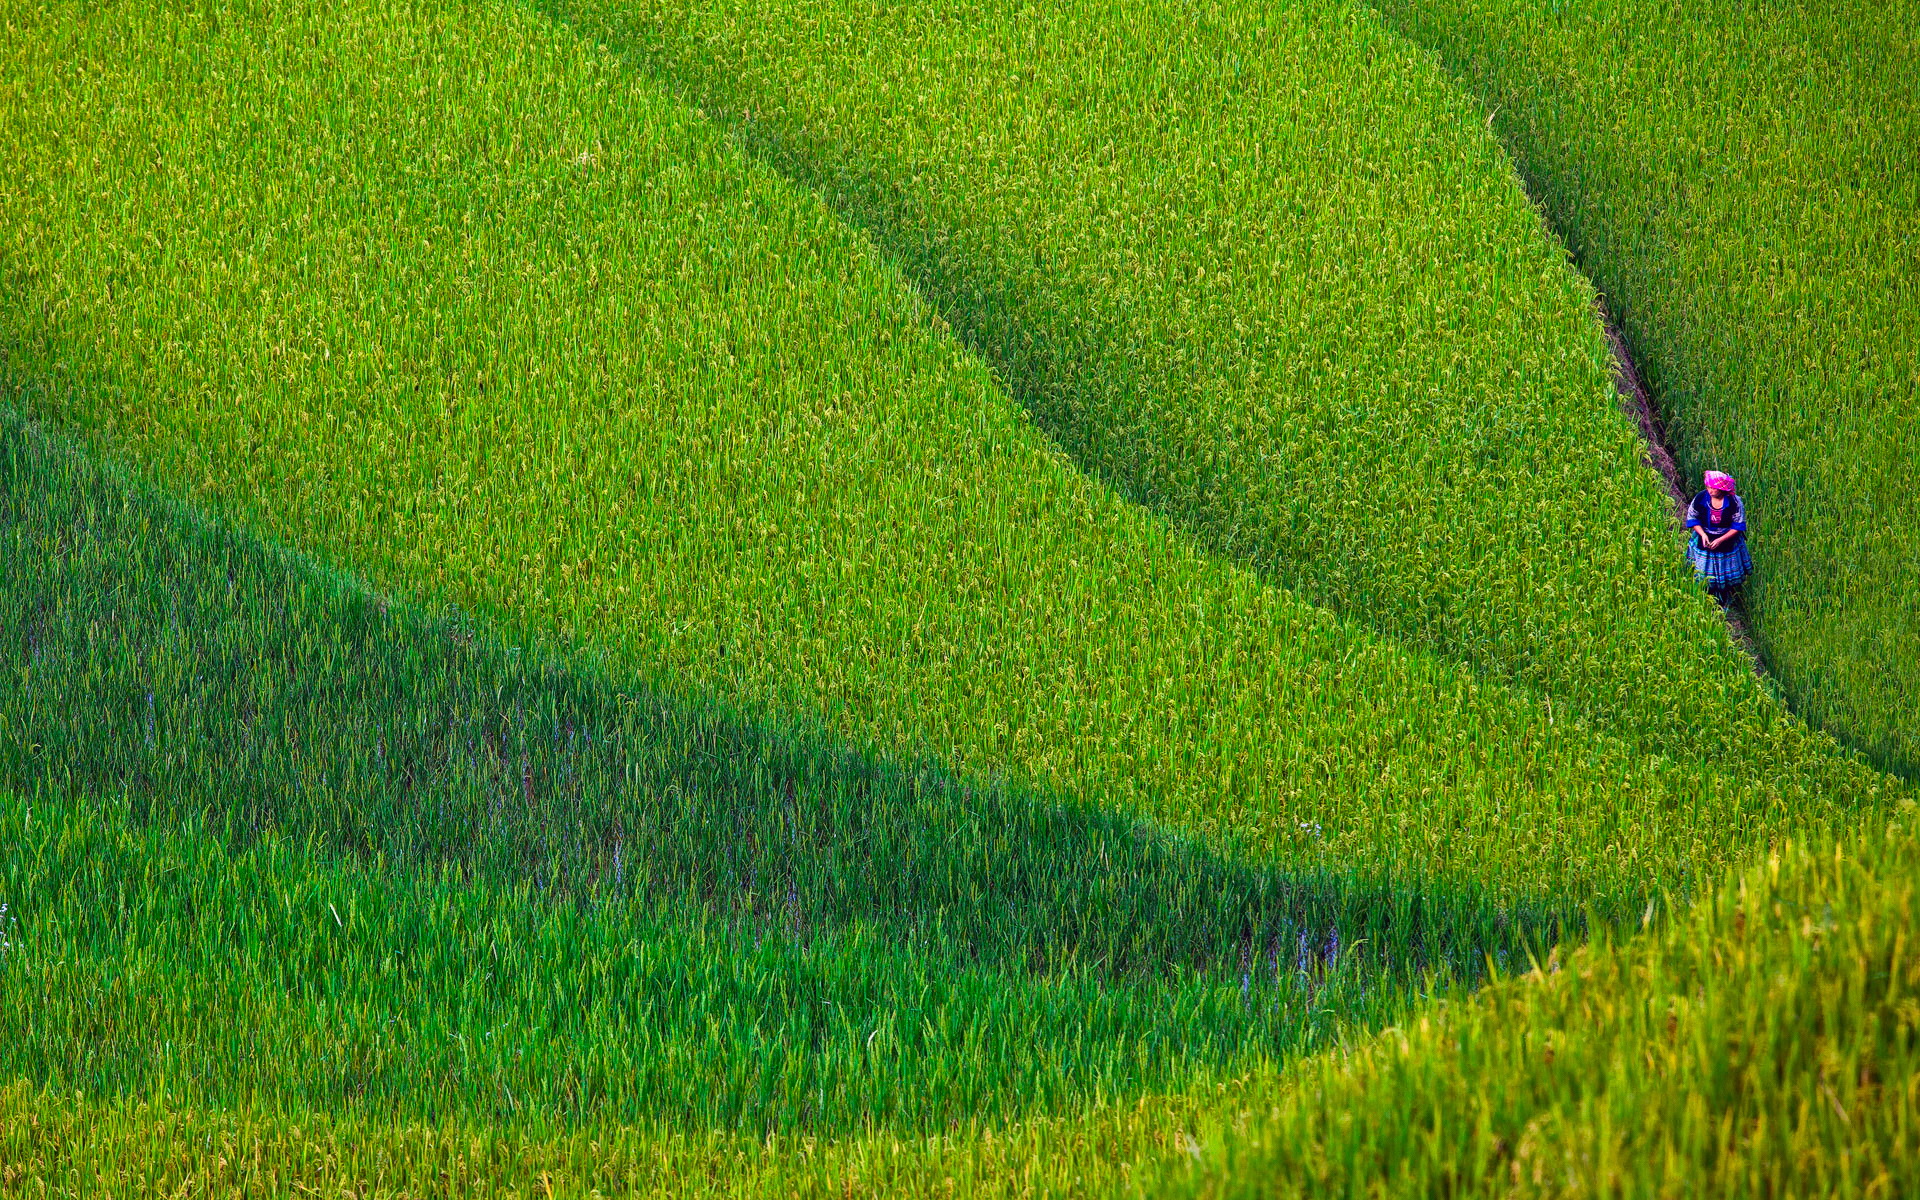 30 Hình nền cánh đồng lúa quê hương thơ mộng tuyệt đẹp  DYB